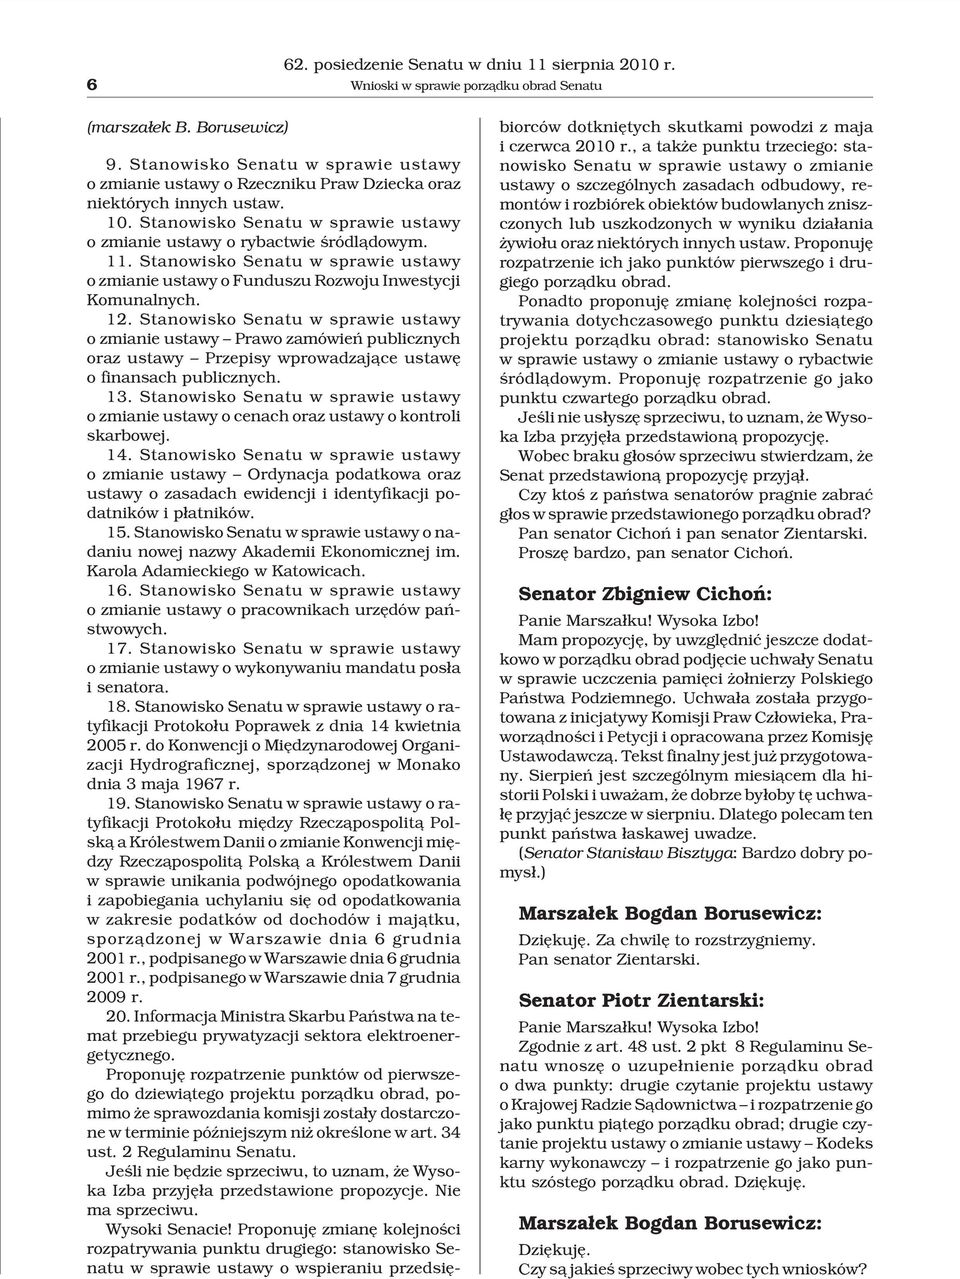 Stanowisko Senatu w sprawie ustawy o zmianie ustawy o Funduszu Rozwoju Inwestycji Komunalnych. 12.